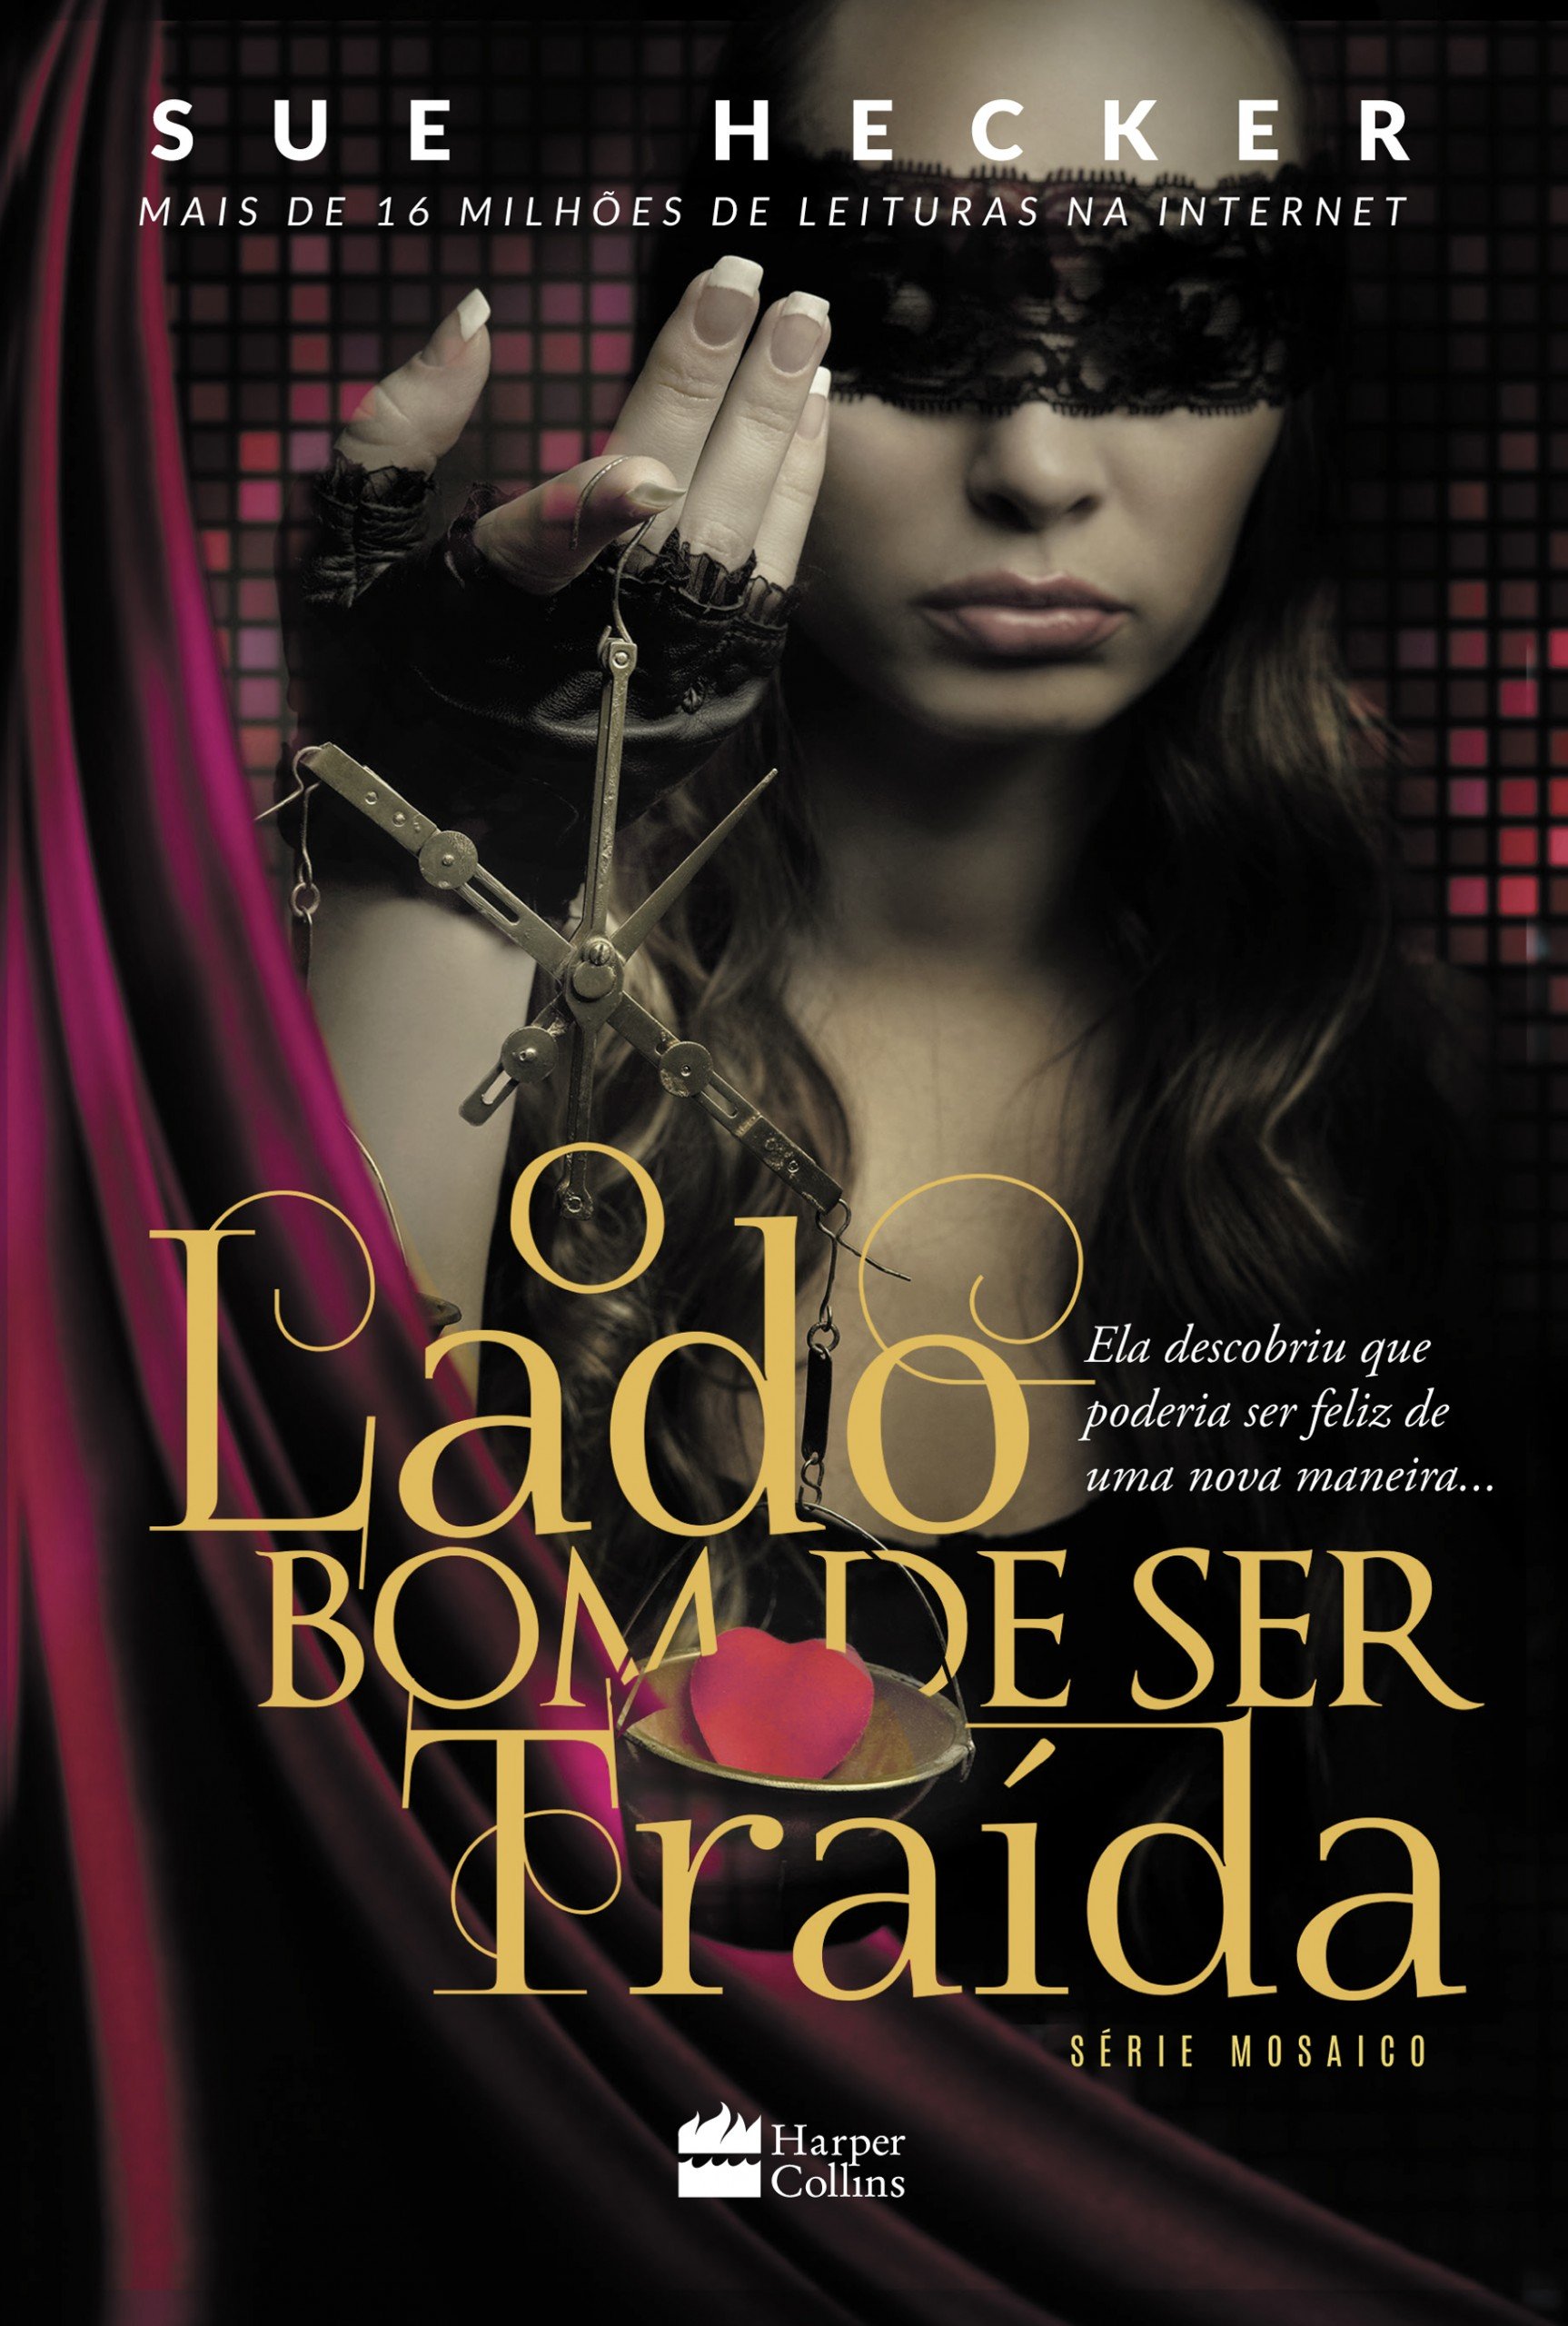 Leandro Lima sobre thriller erótico com Giovanna Lancellotti: "Kama Sutra de A a Z"